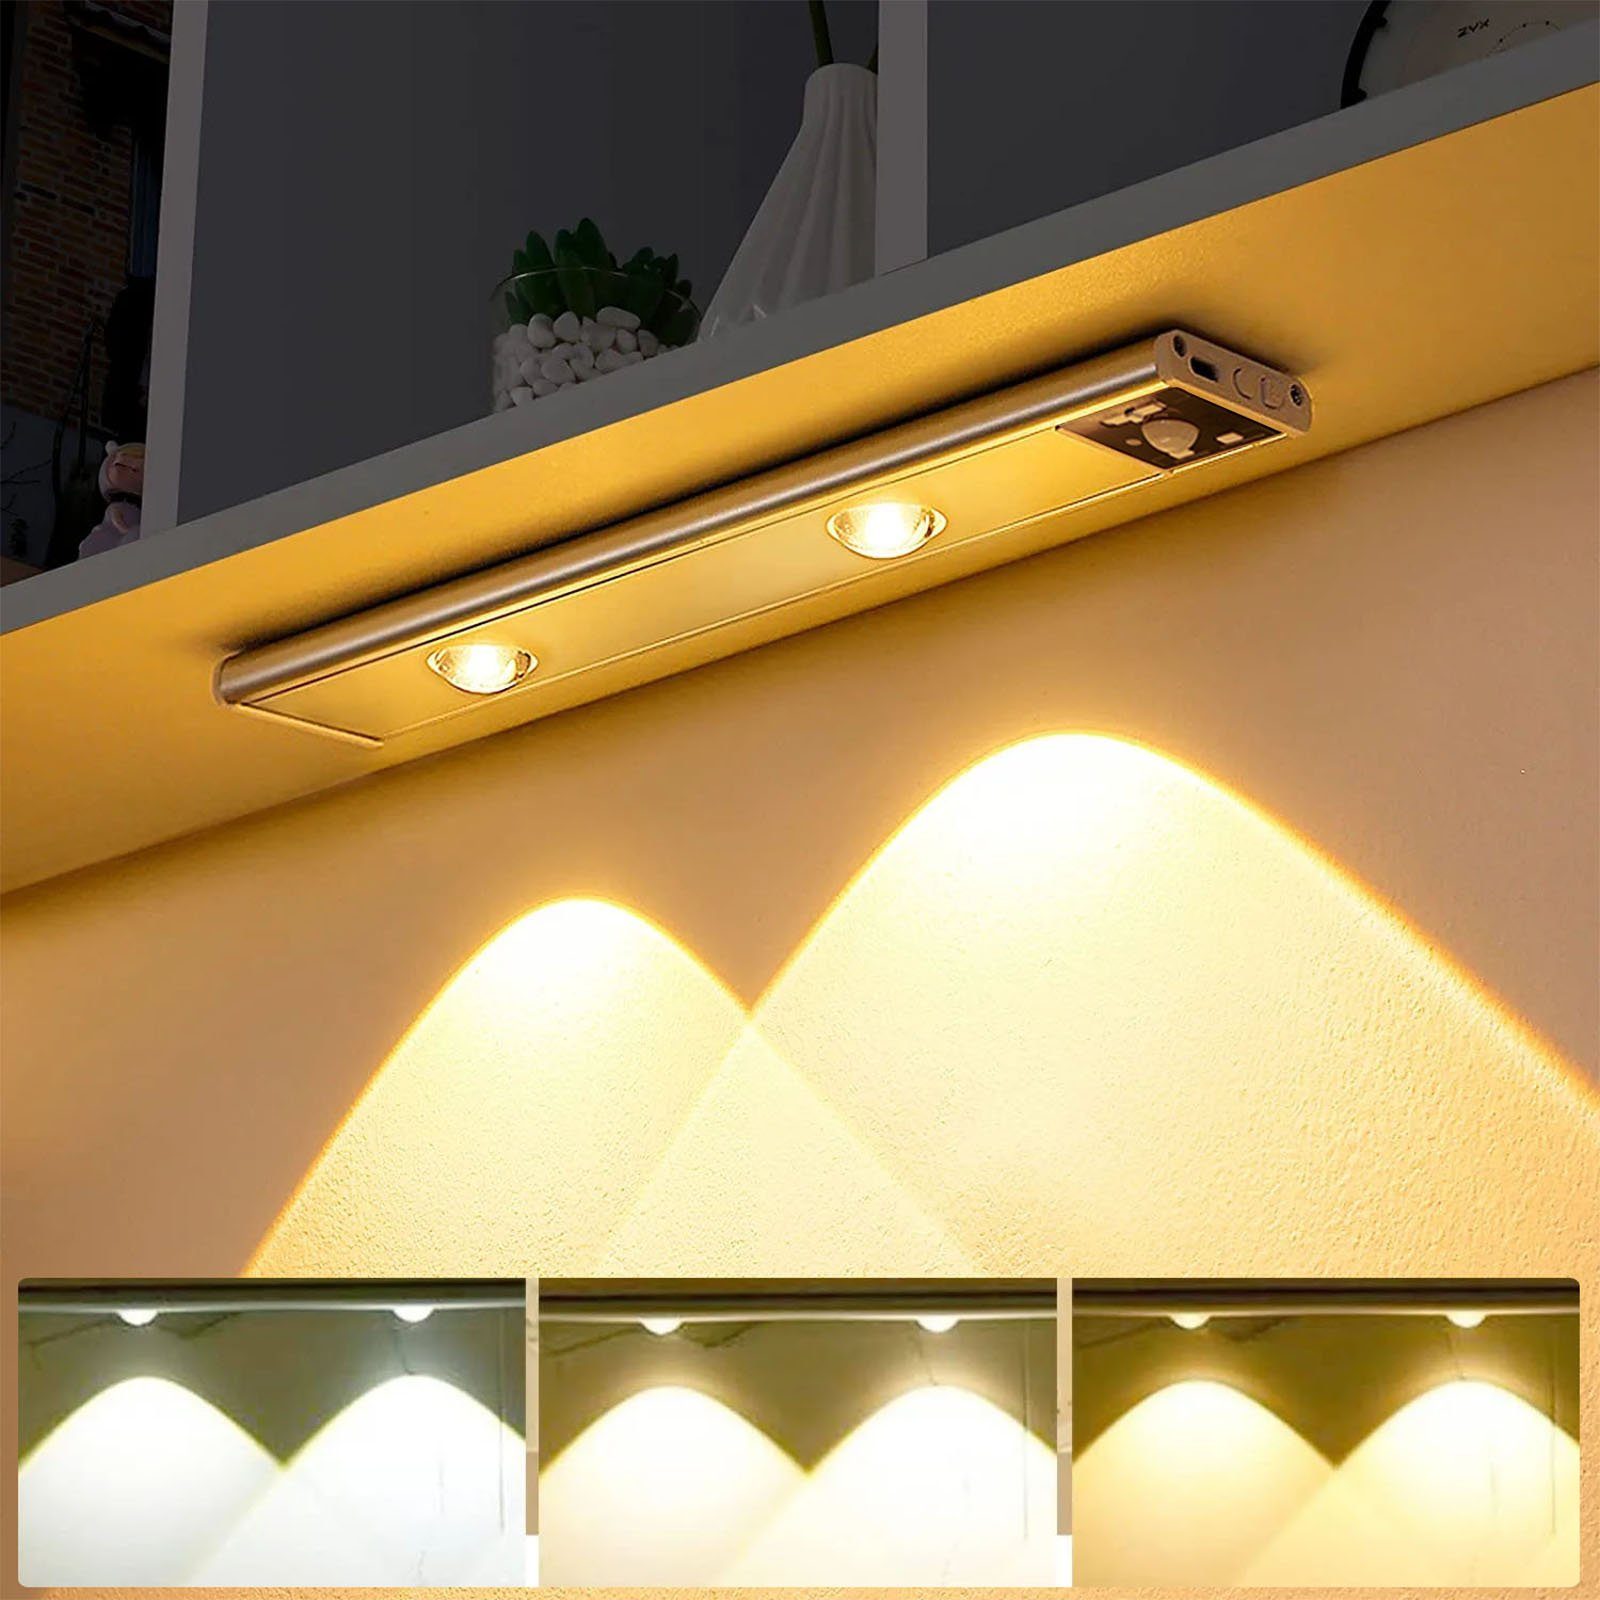 MUPOO LED Lichtleiste LED Unterbauleuchte Unterschrank Beleuchtung  Magnetisch,Kabellose, 3 Lichtfarben, Led Wandleuchte, Bewegungssensor,  Ultradünne 120°Induktion, 3000K Warmweiß, 4500K Naturweiß, 6500K  Kaltweiß,USB-Laden, für Unterbauleuchte Küche ...